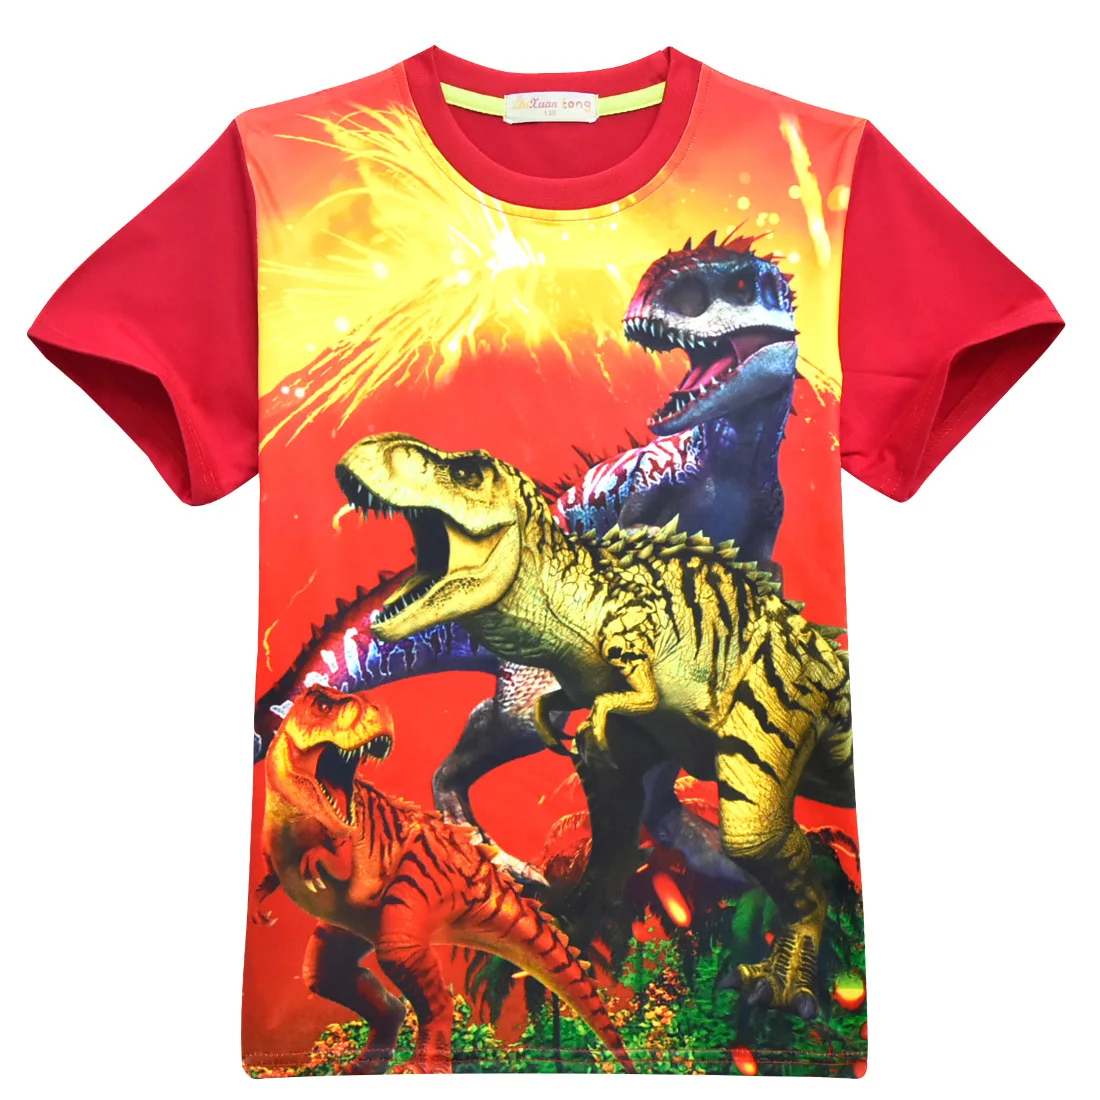 Парк и мир Юрского периода, 2 динозавра, детские шорты, топы, футболки, футболки, Fille, летняя футболка с драконом для мальчиков-подростков, От 4 до 12 лет для мальчиков - Цвет: Red